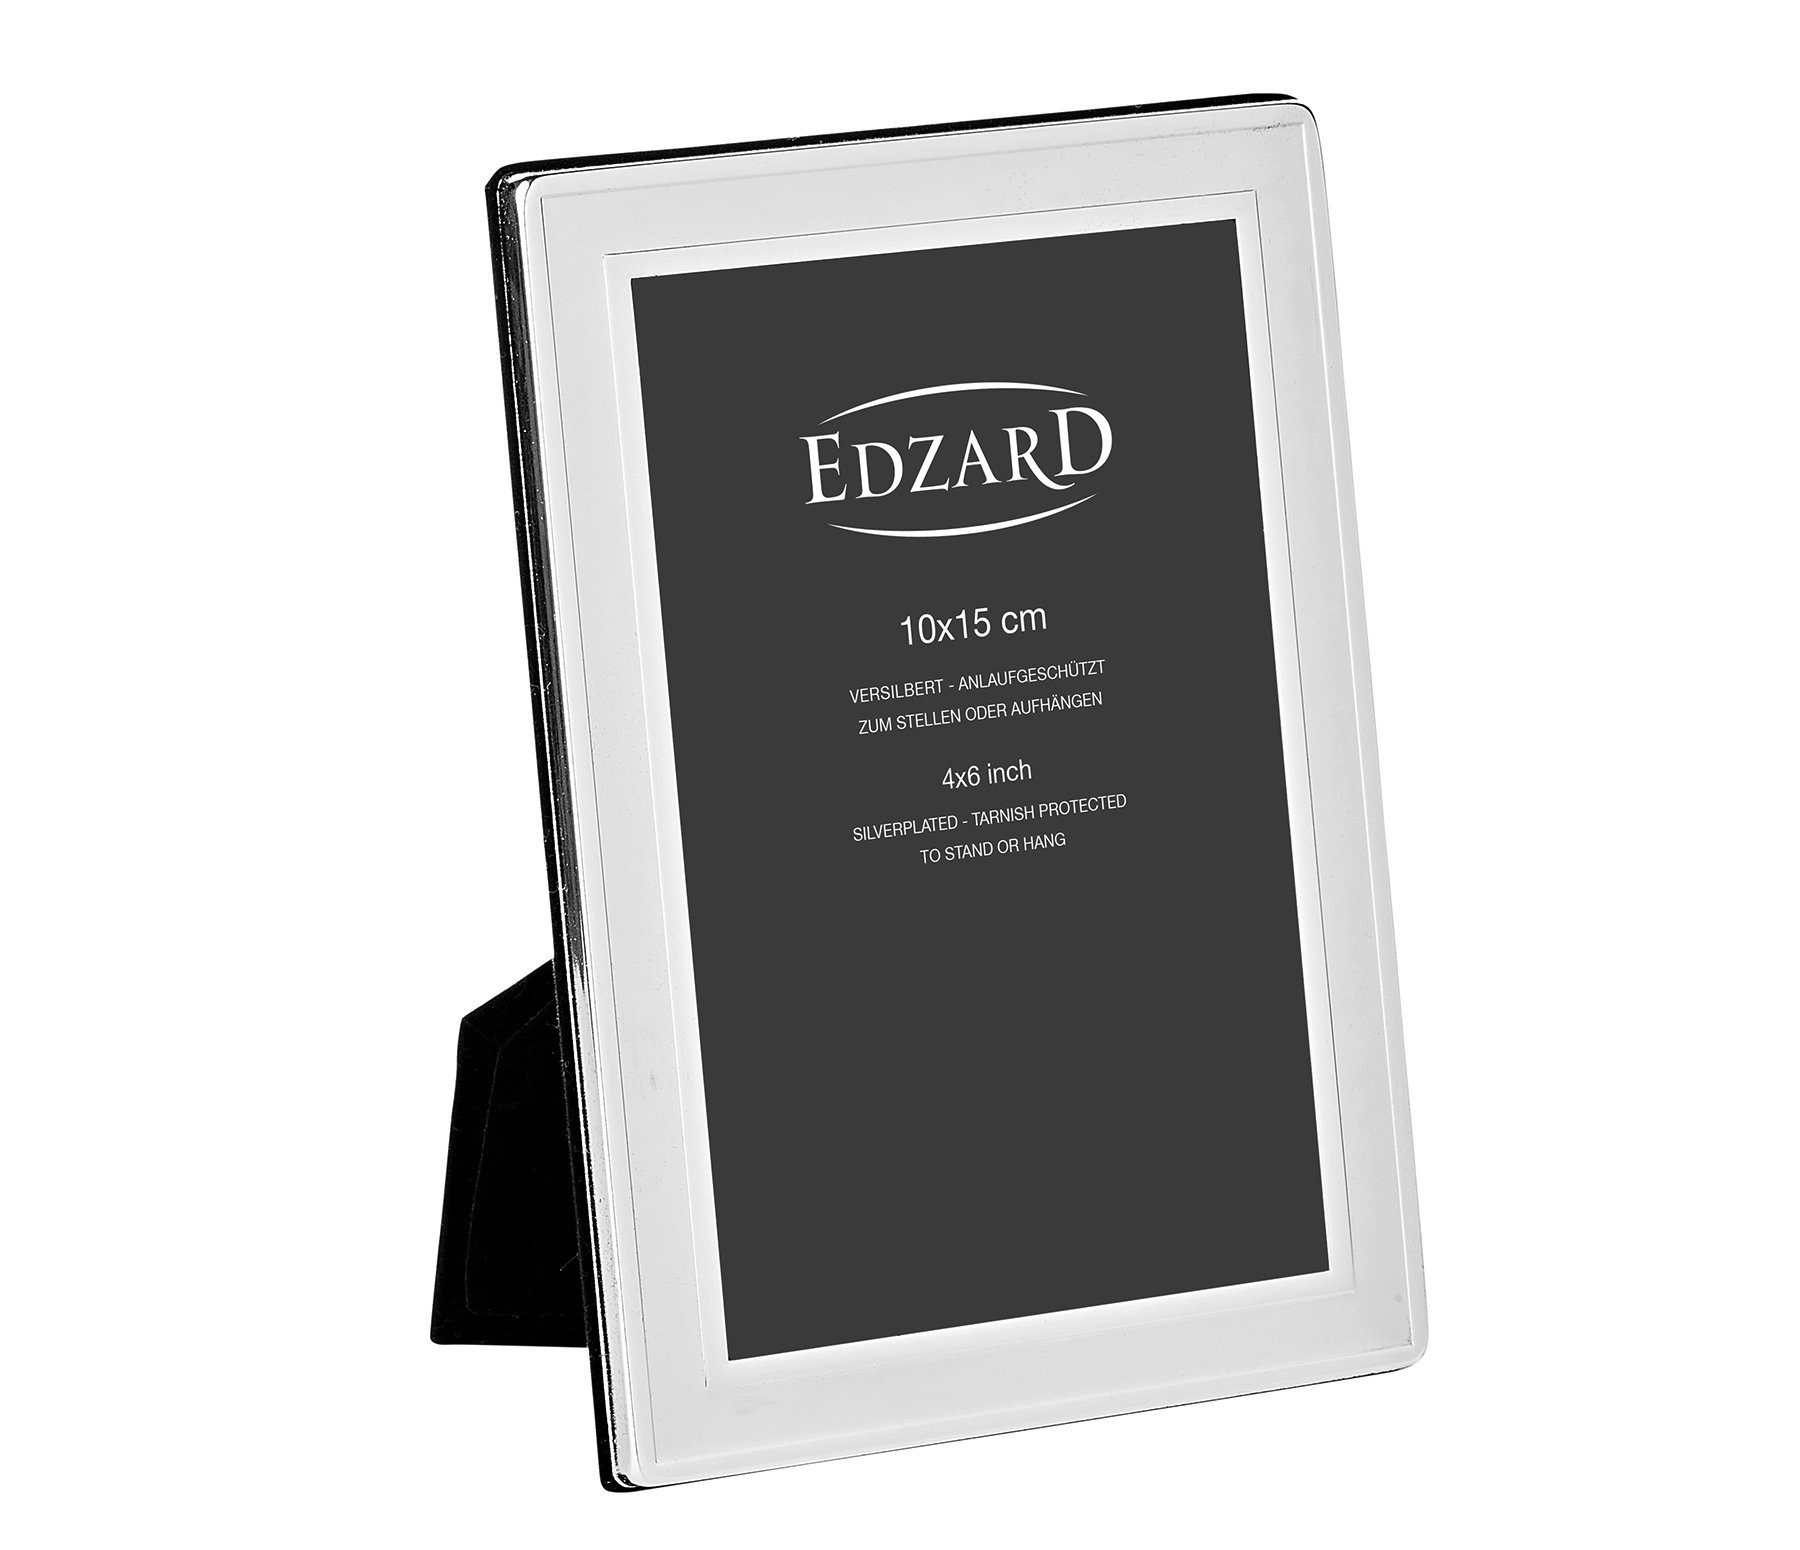 EDZARD Bilderrahmen Nardo, versilbert und anlaufgeschützt, für 10x15 cm Foto